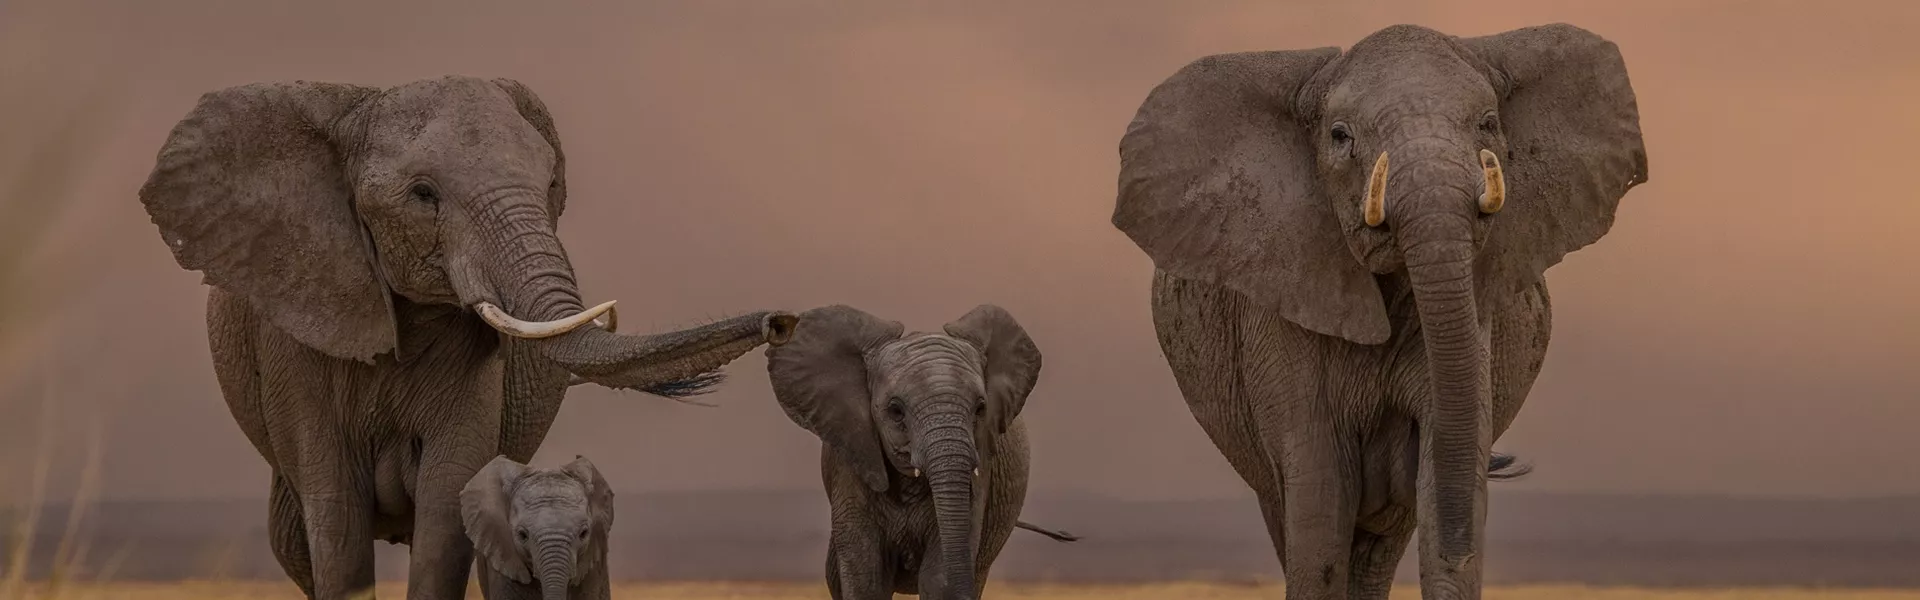 A group of elephants walking across a dry grass field